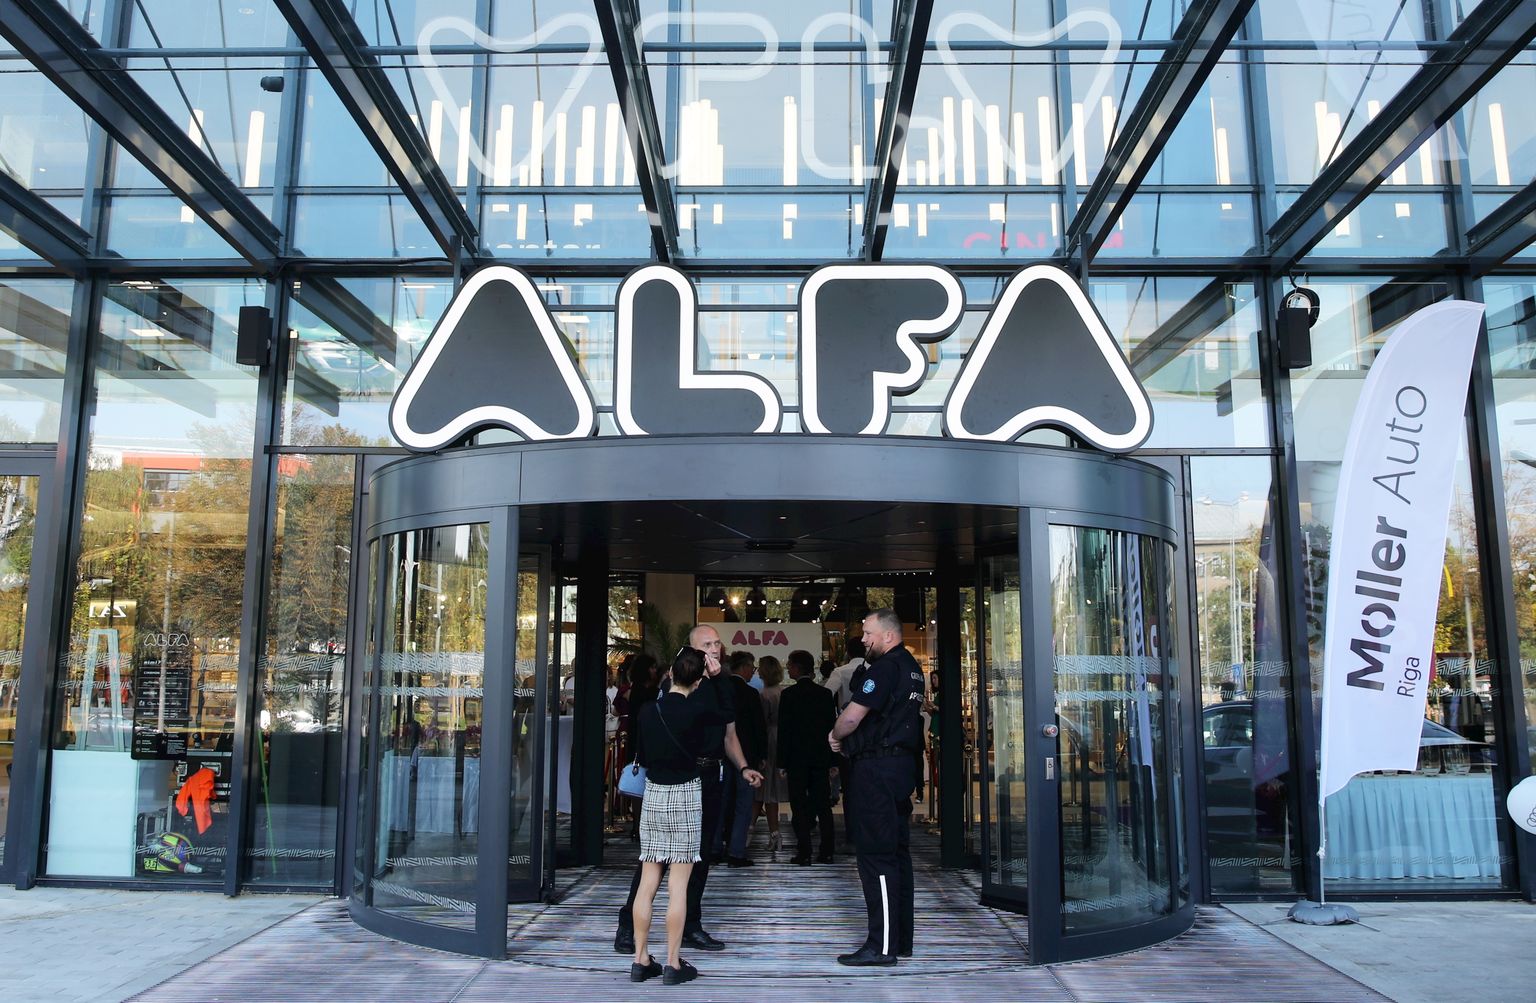 Tirdzniecības centra "Alfa" jaunā ēka.